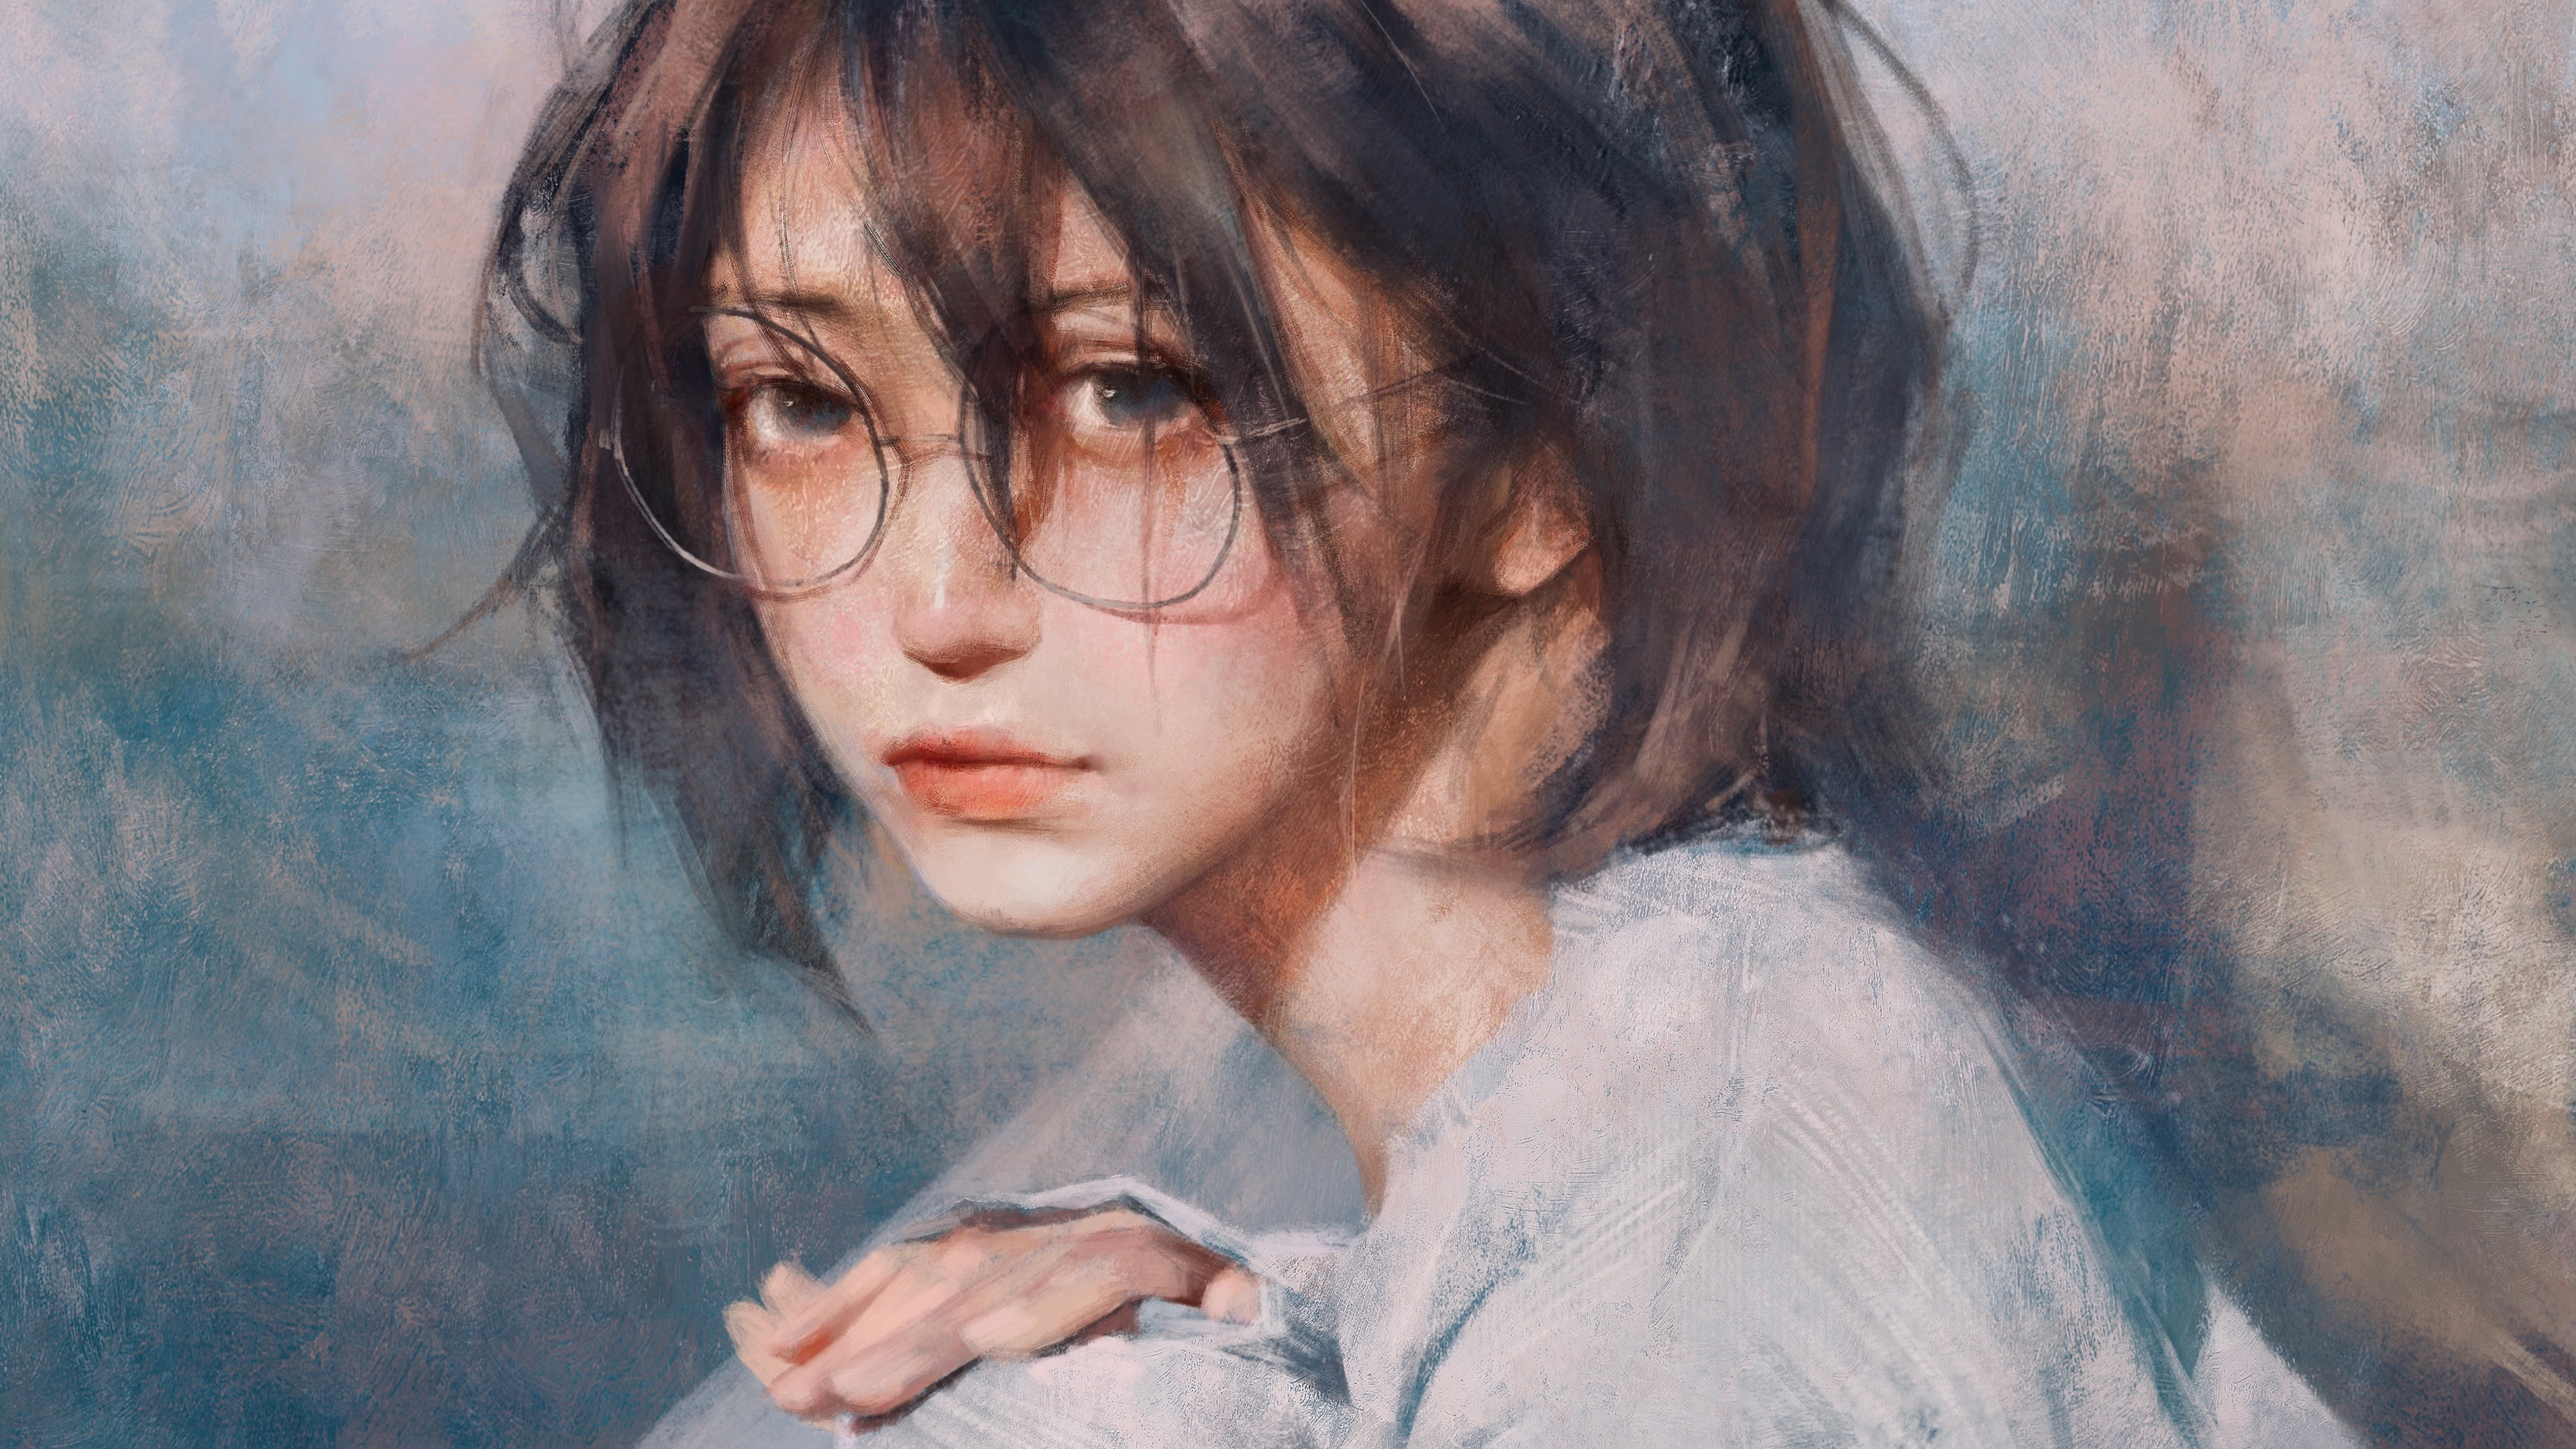 Anime Girls Glasses Digital Art Artwork Short Hair Handrail White T Shirt 3840x2160